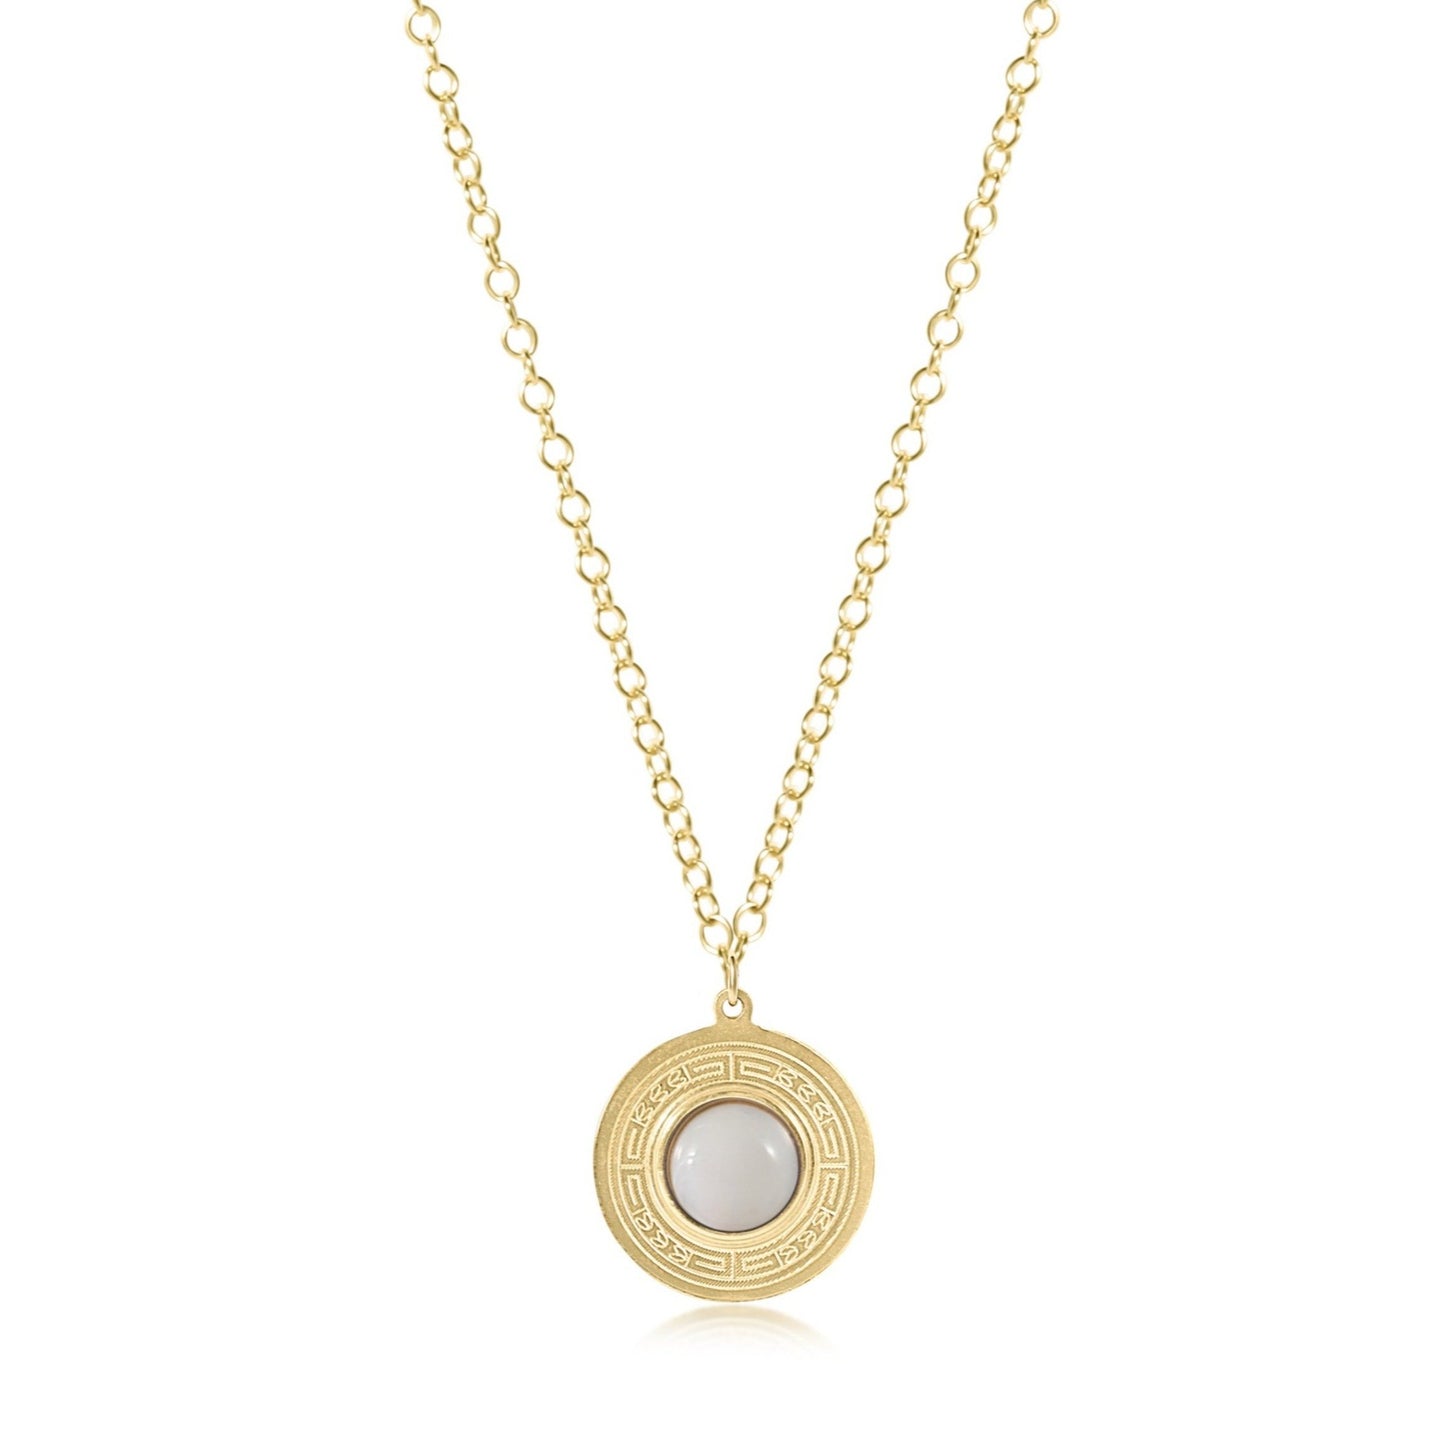 30" Necklace Gold - Athena Large Gold Charm - Gemstone